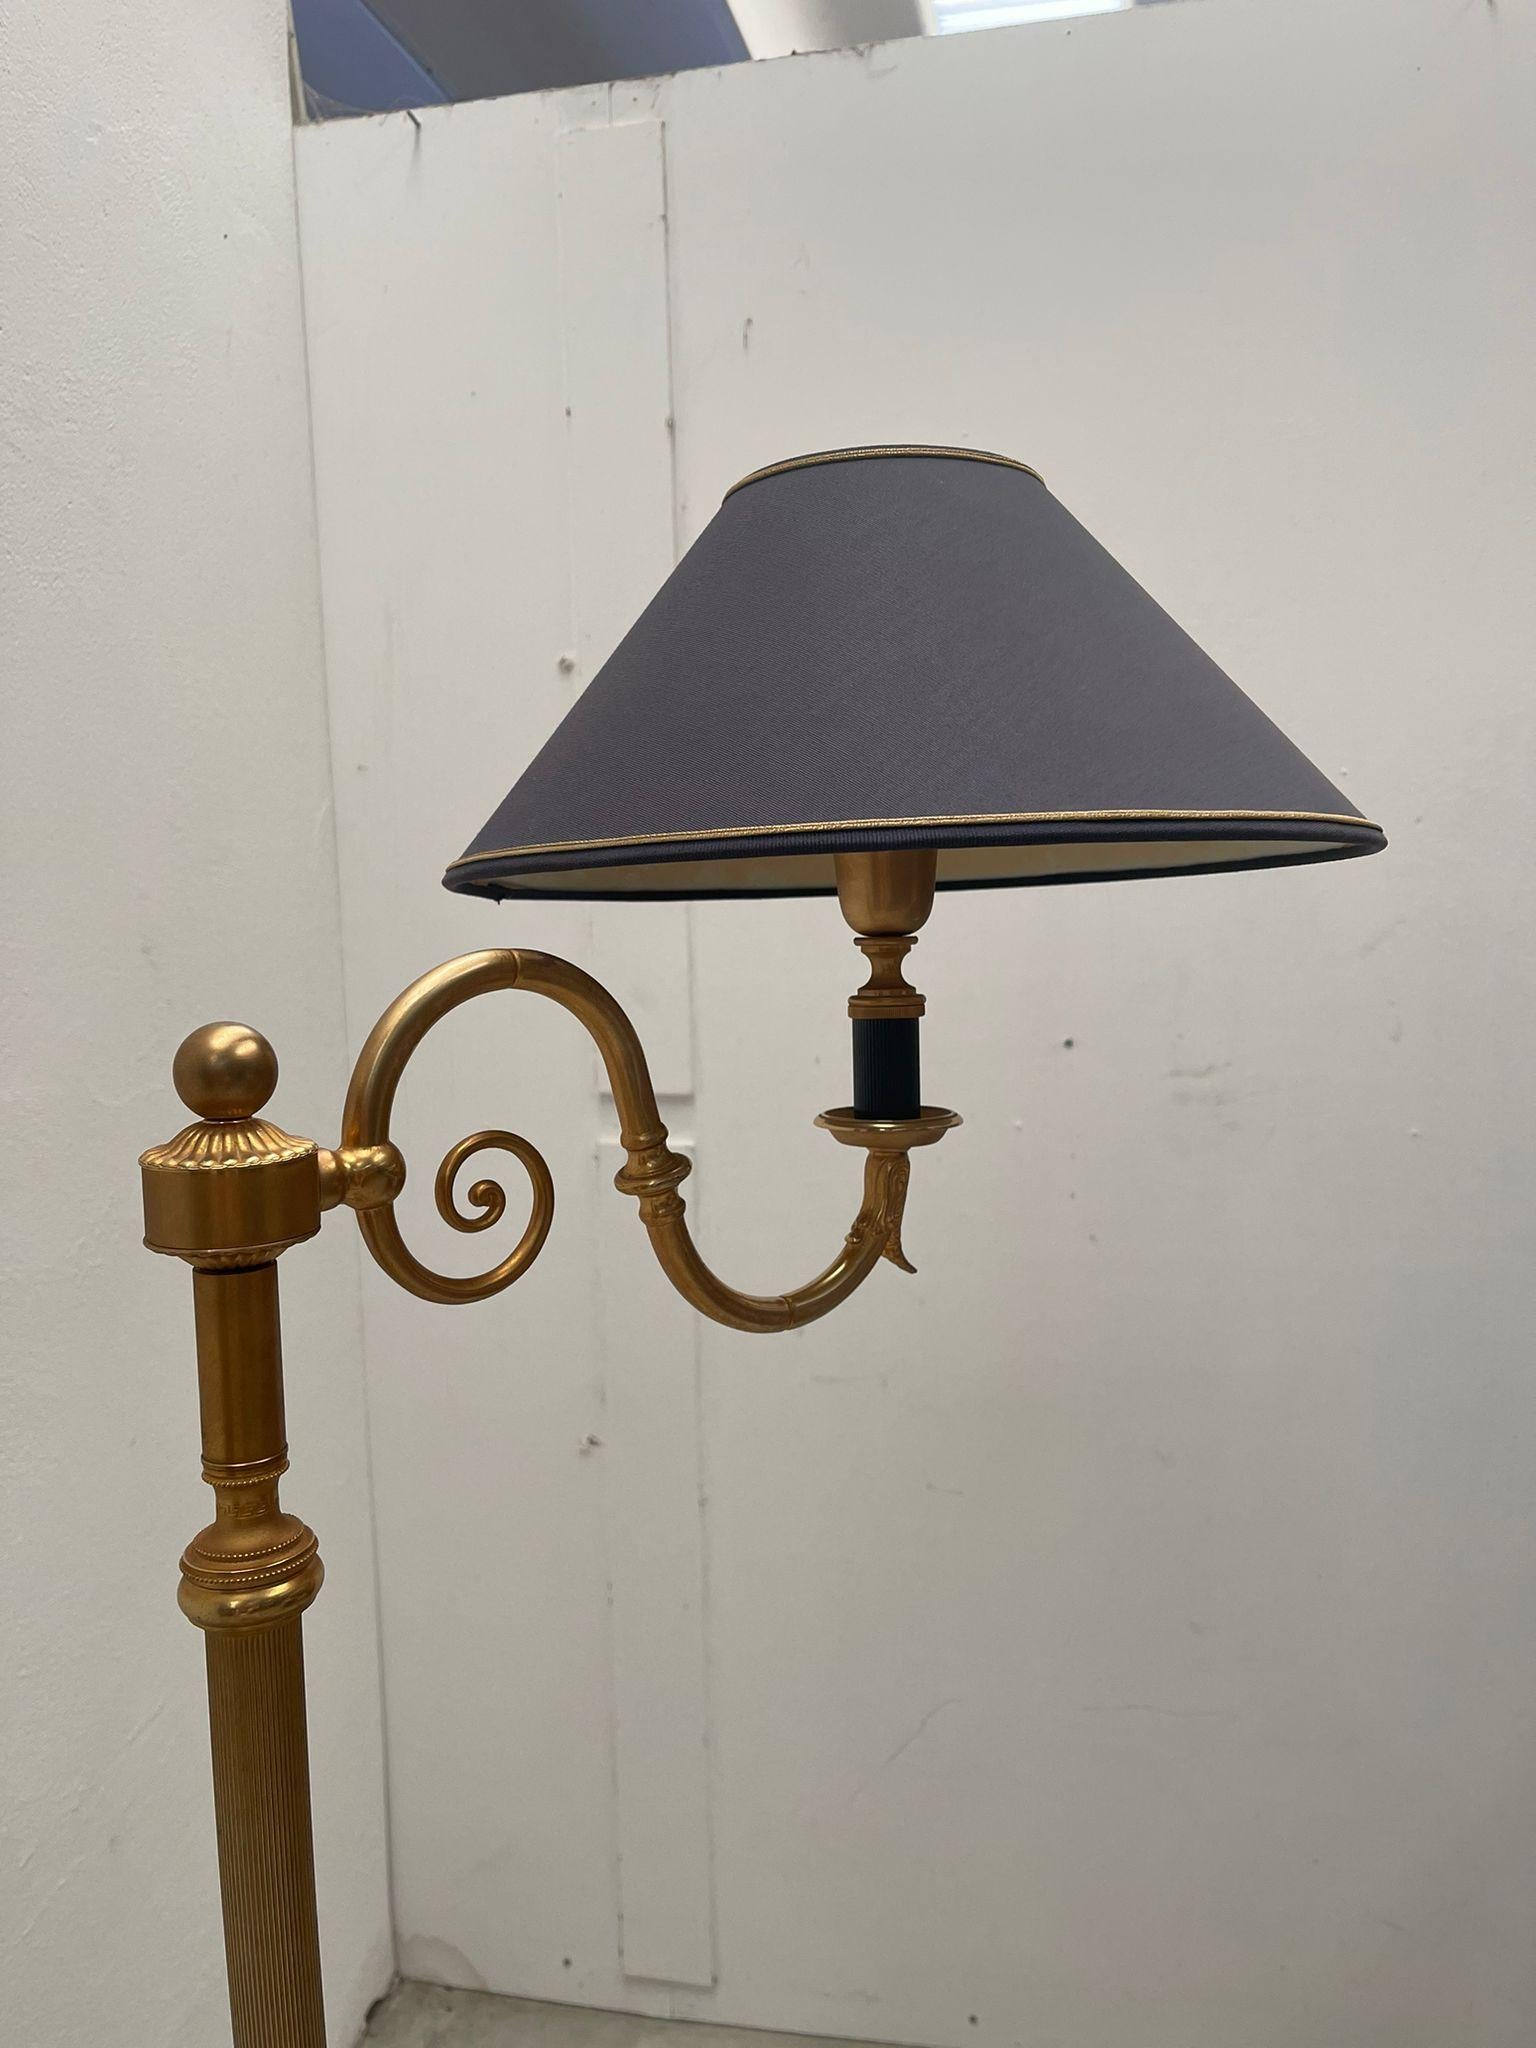 Seltene Vintage-Stehlampe aus den 1950er Jahren. Das Licht wird von der weißen Inneneinrichtung wunderschön reflektiert, was zu einem weichen und warmen Licht führt. 

Ein einzigartiges Produkt von Mice Versailles.

Ausgezeichneter Originalzustand.